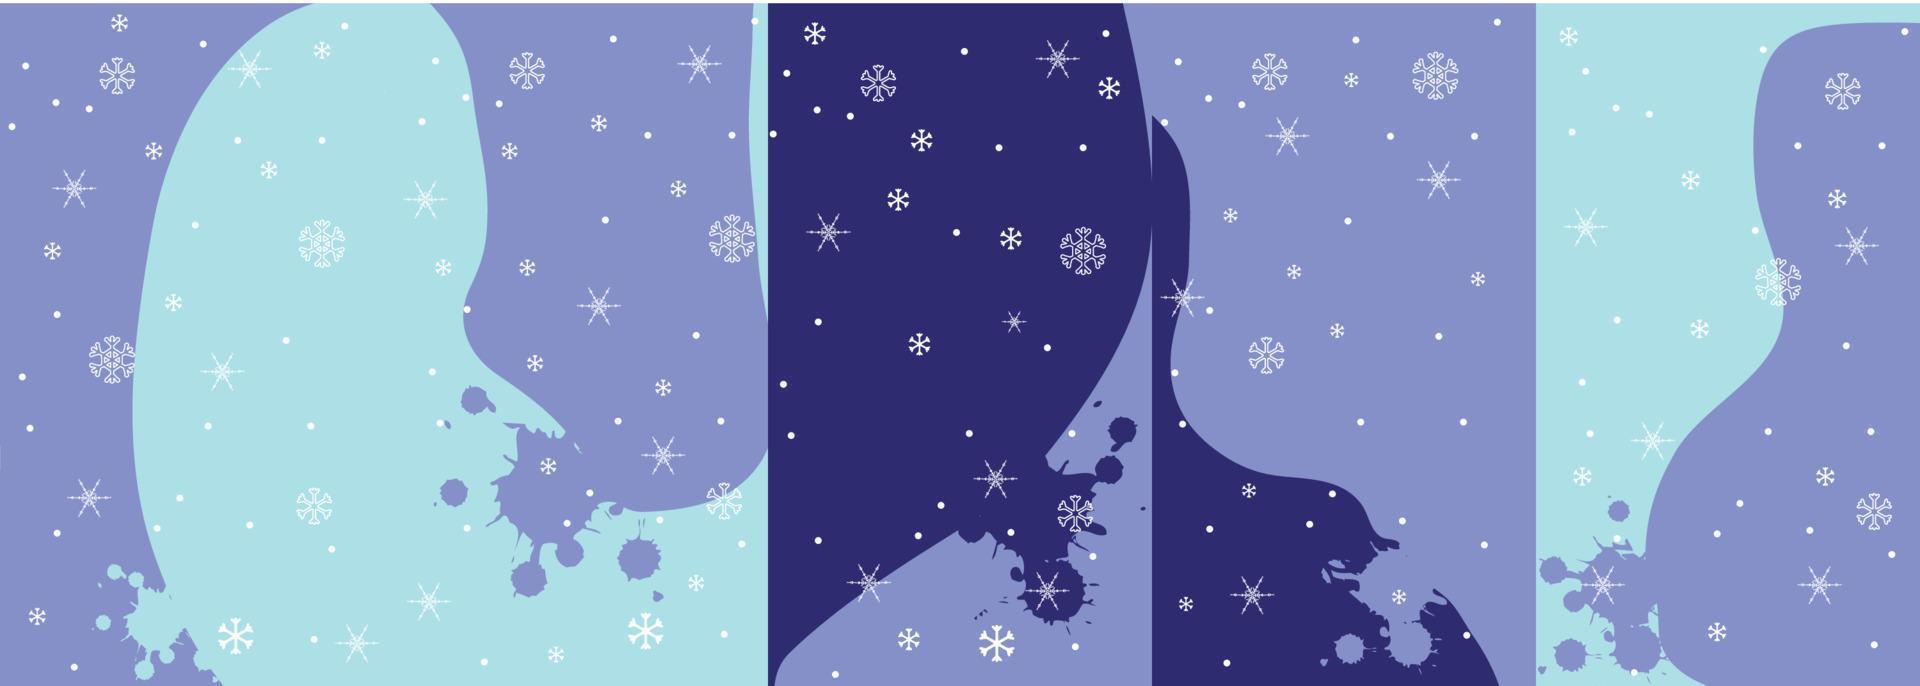 ensemble d'images vectorielles de modèles d'histoires de médias sociaux pour la vente de vacances, arrière-plans d'histoires instagram. arrière-plans d'hiver de noël avec des flocons de neige. vecteur